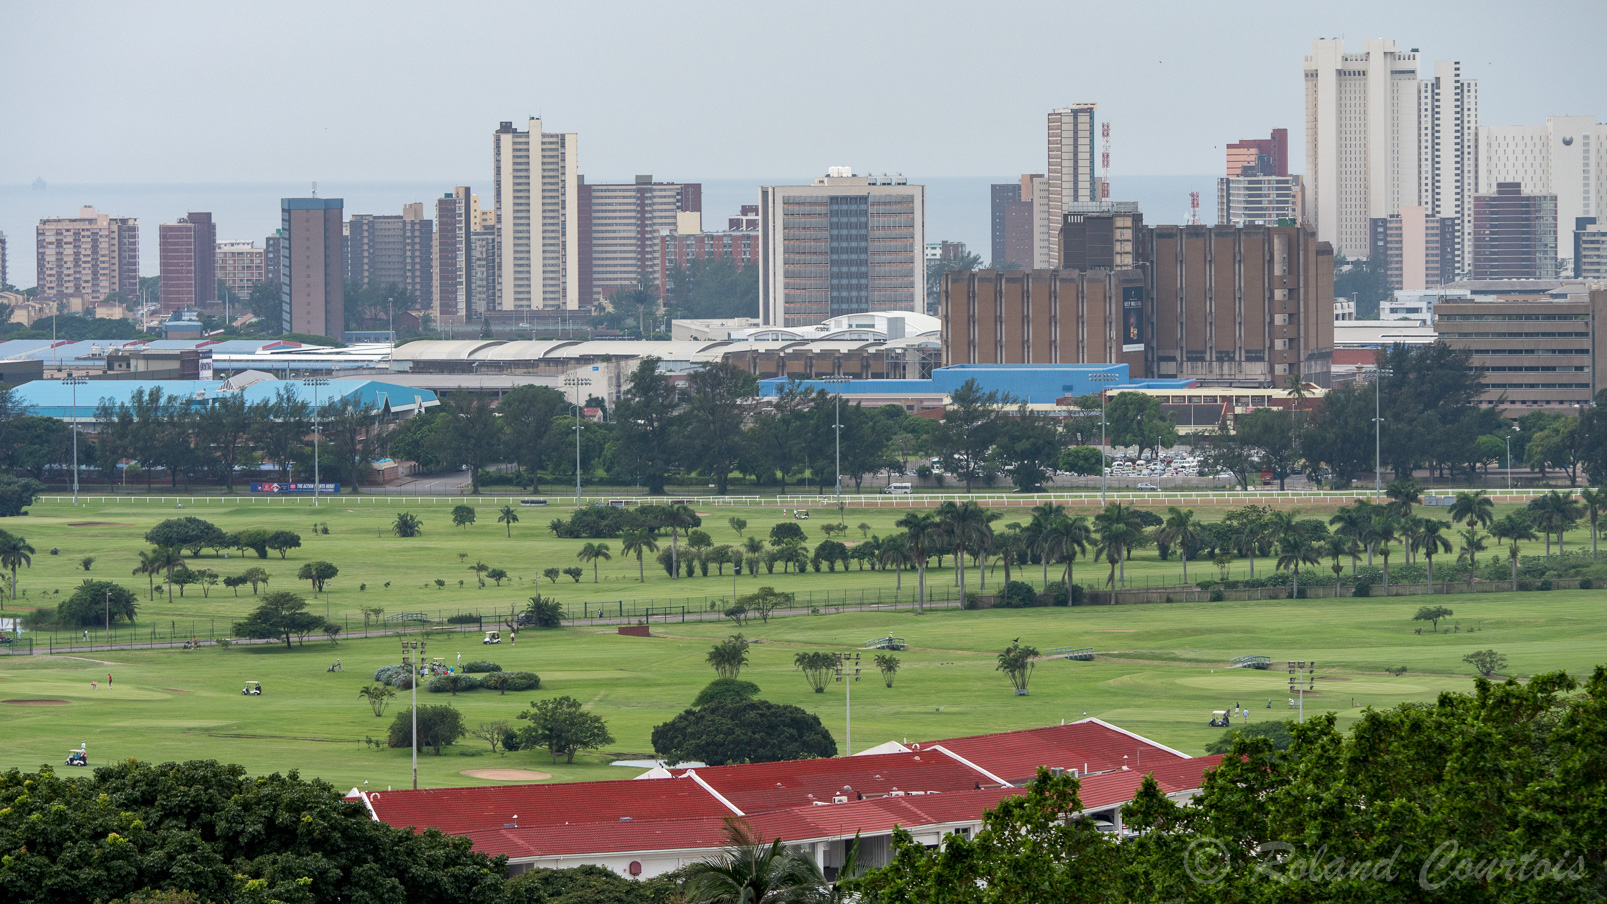 Vue sur la ville de Durban.